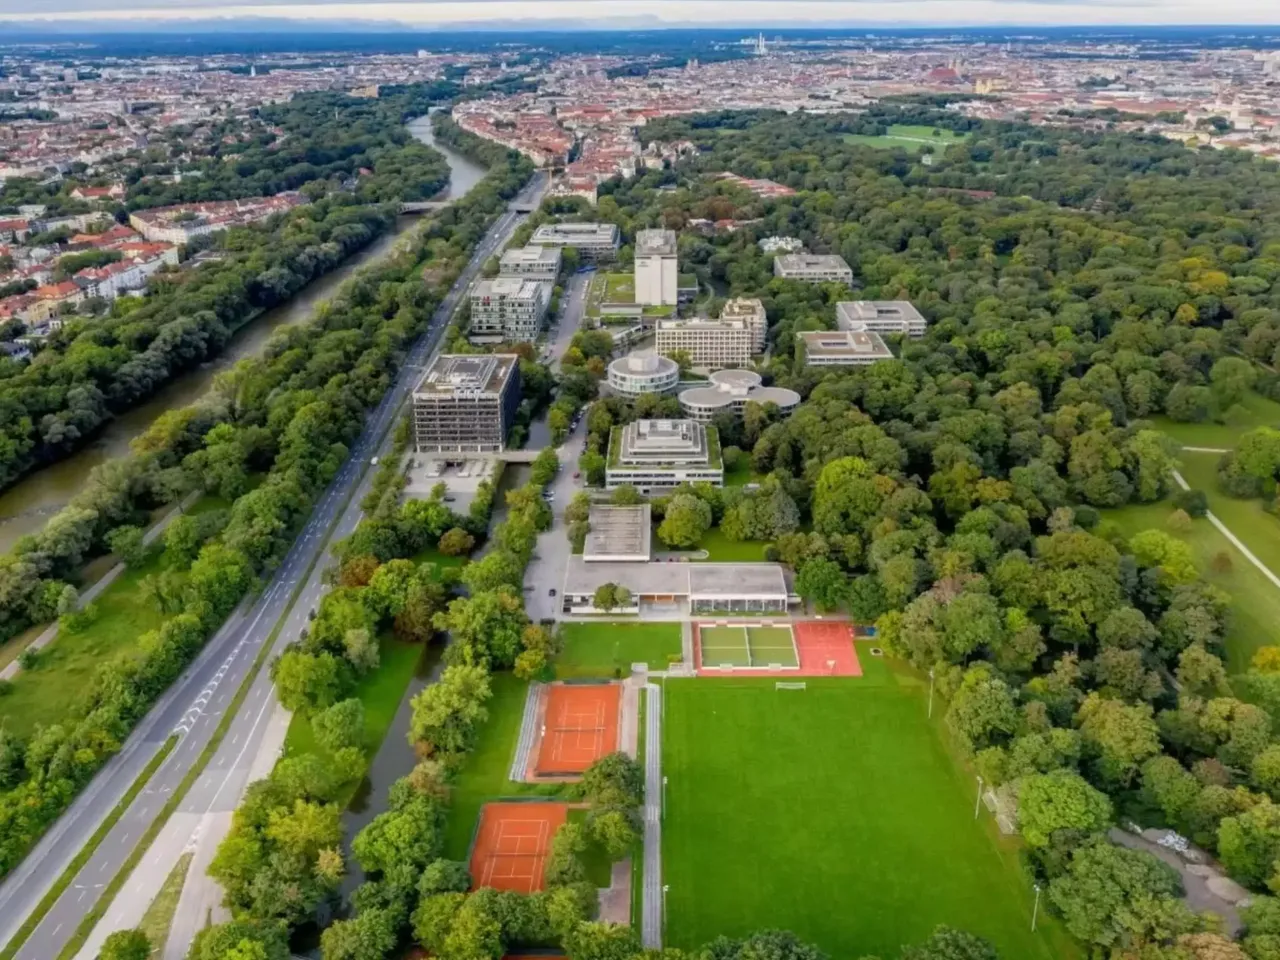 Außenansicht: Es wird ein Überblick über die hausInvest Immobilie Tucherpark in München gezeigt